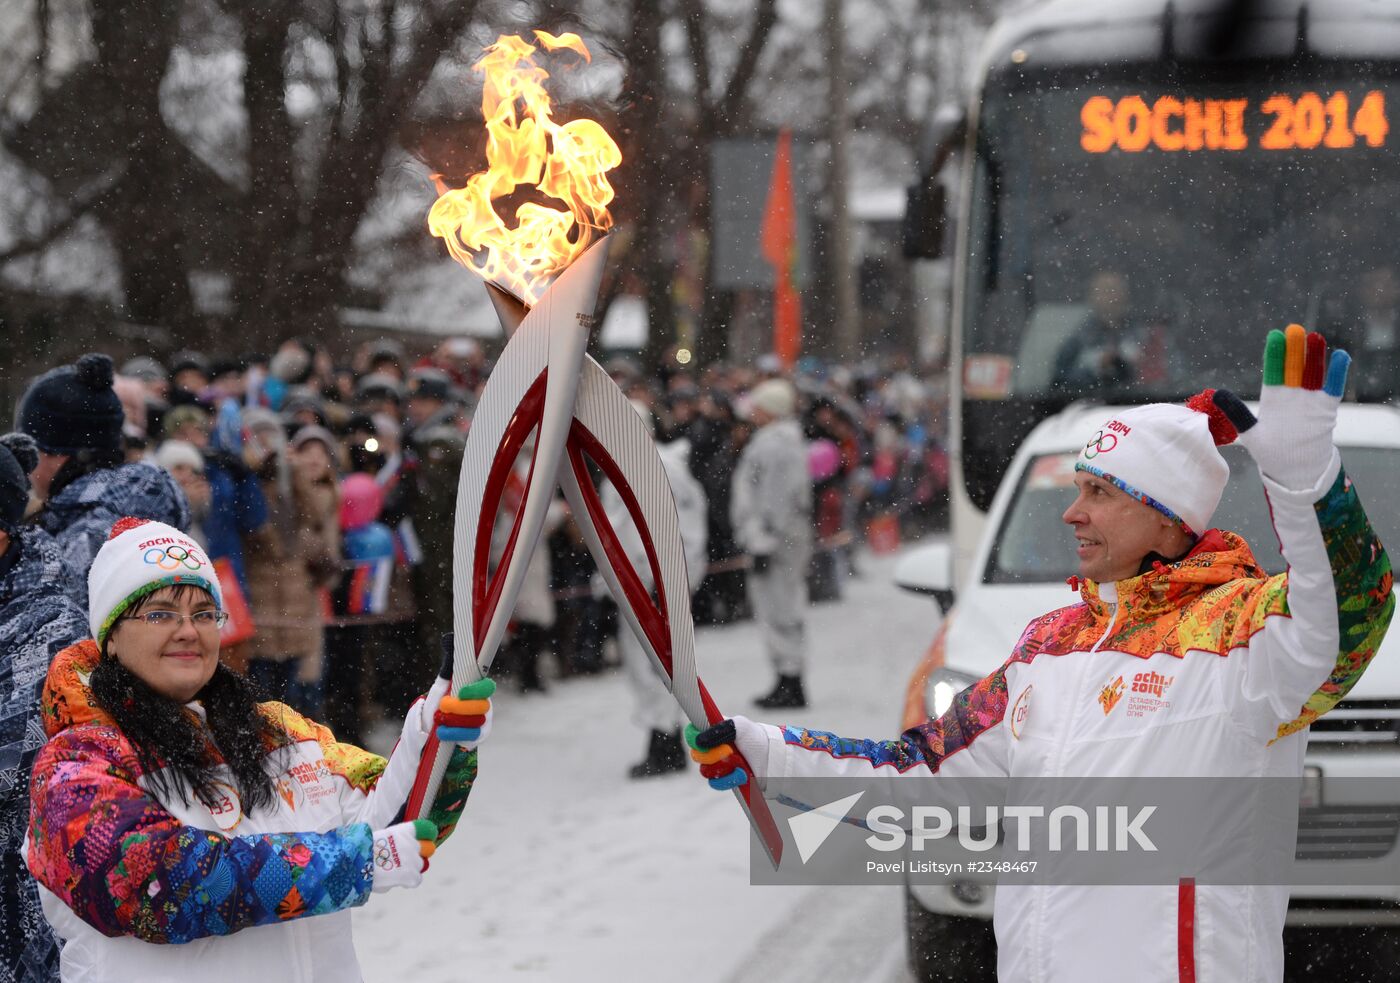 Sochi 2014 Olympic torch relay. Bryansk